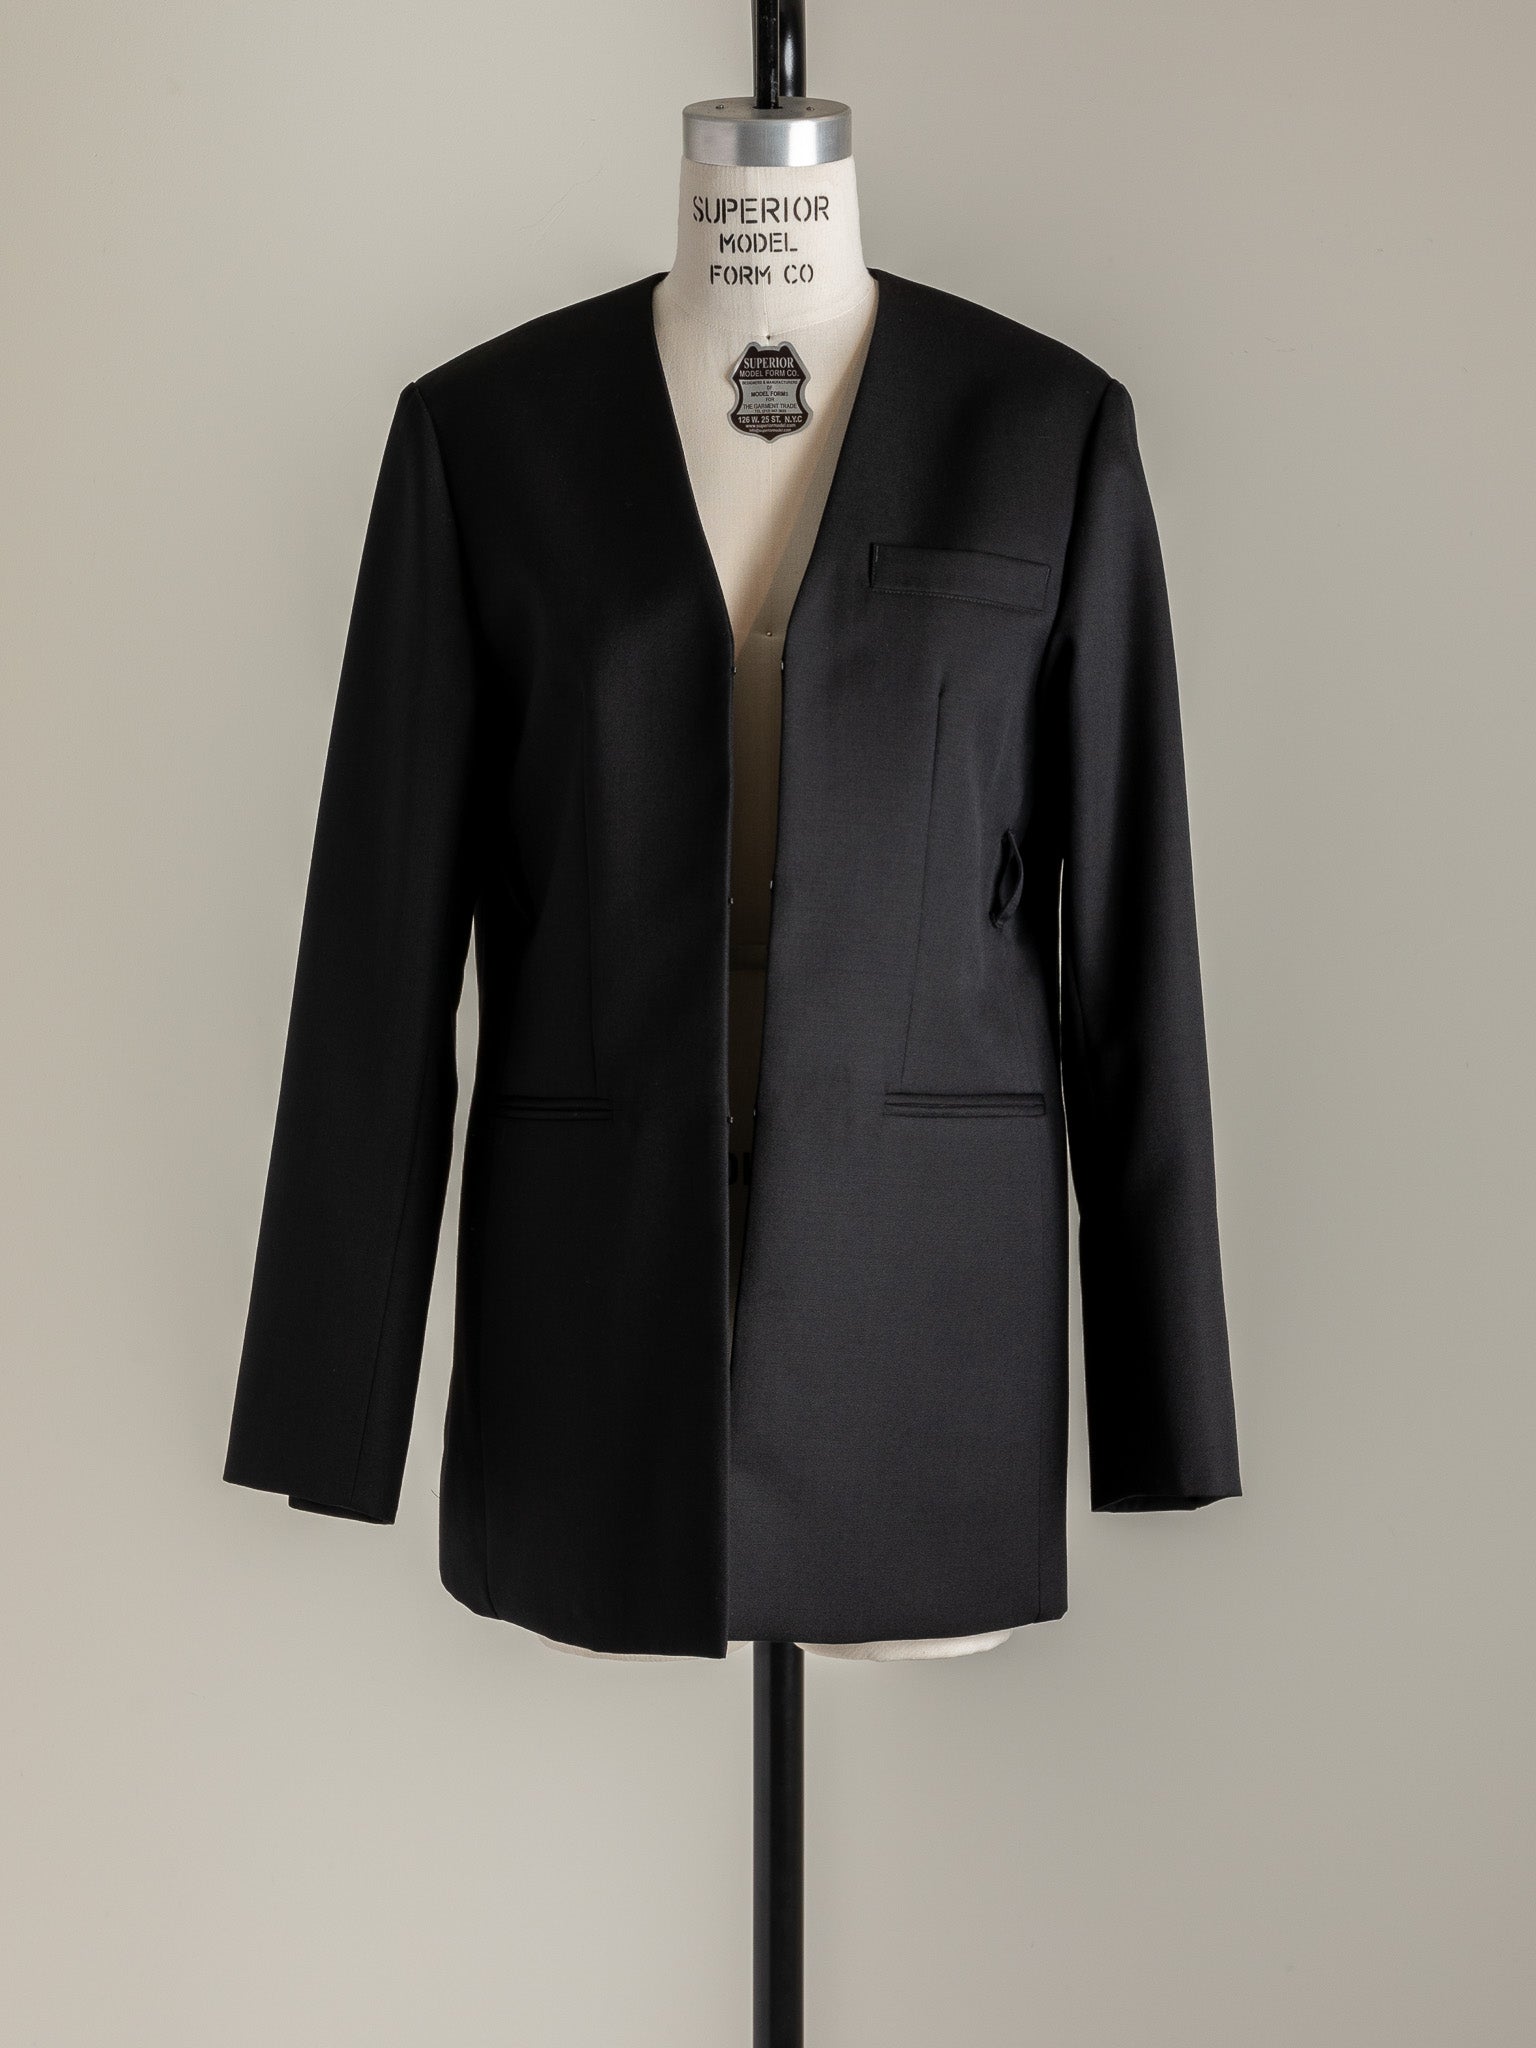 24,300円deres デレス all-around jacket Black